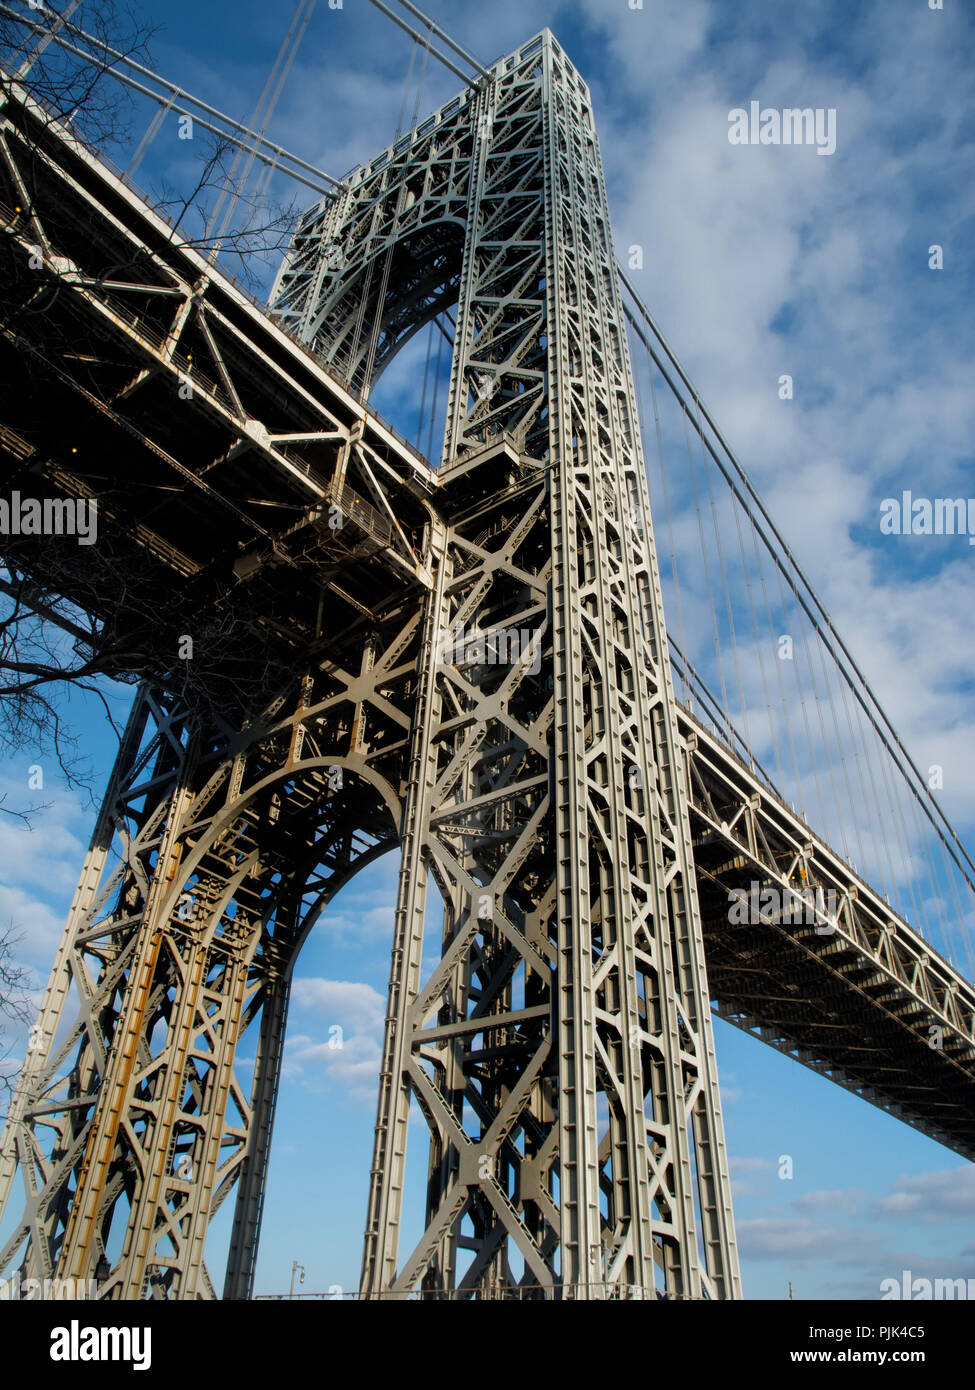 George Washington Bridge New York City, United States Stock Photo